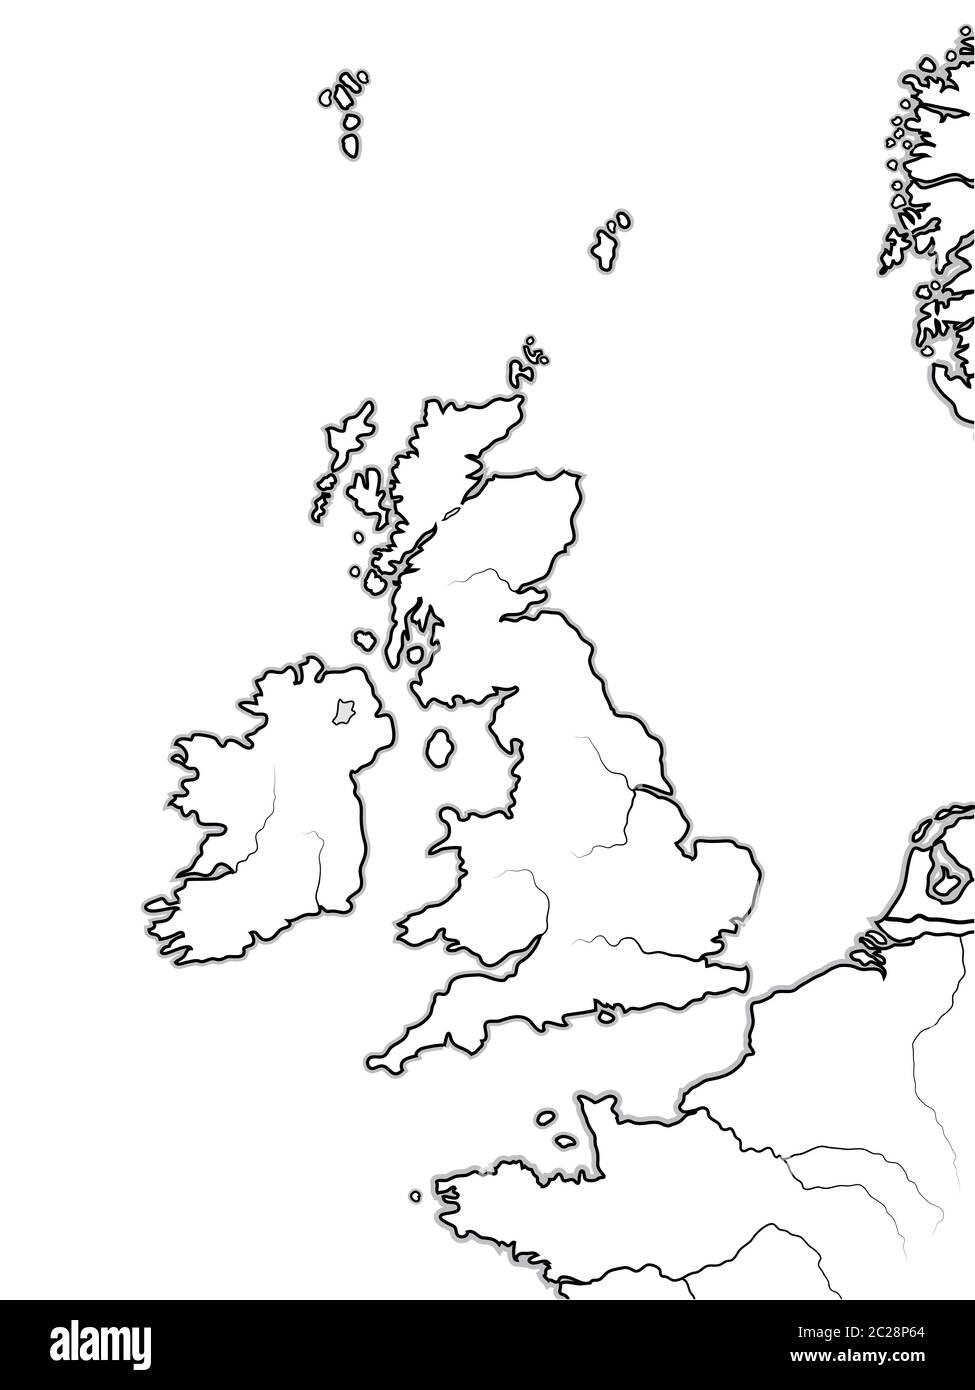 Karte der ENGLISCHEN Länder: Großbritannien, England, Schottland, Wales & Irland. Geografische Karte. Stockfoto